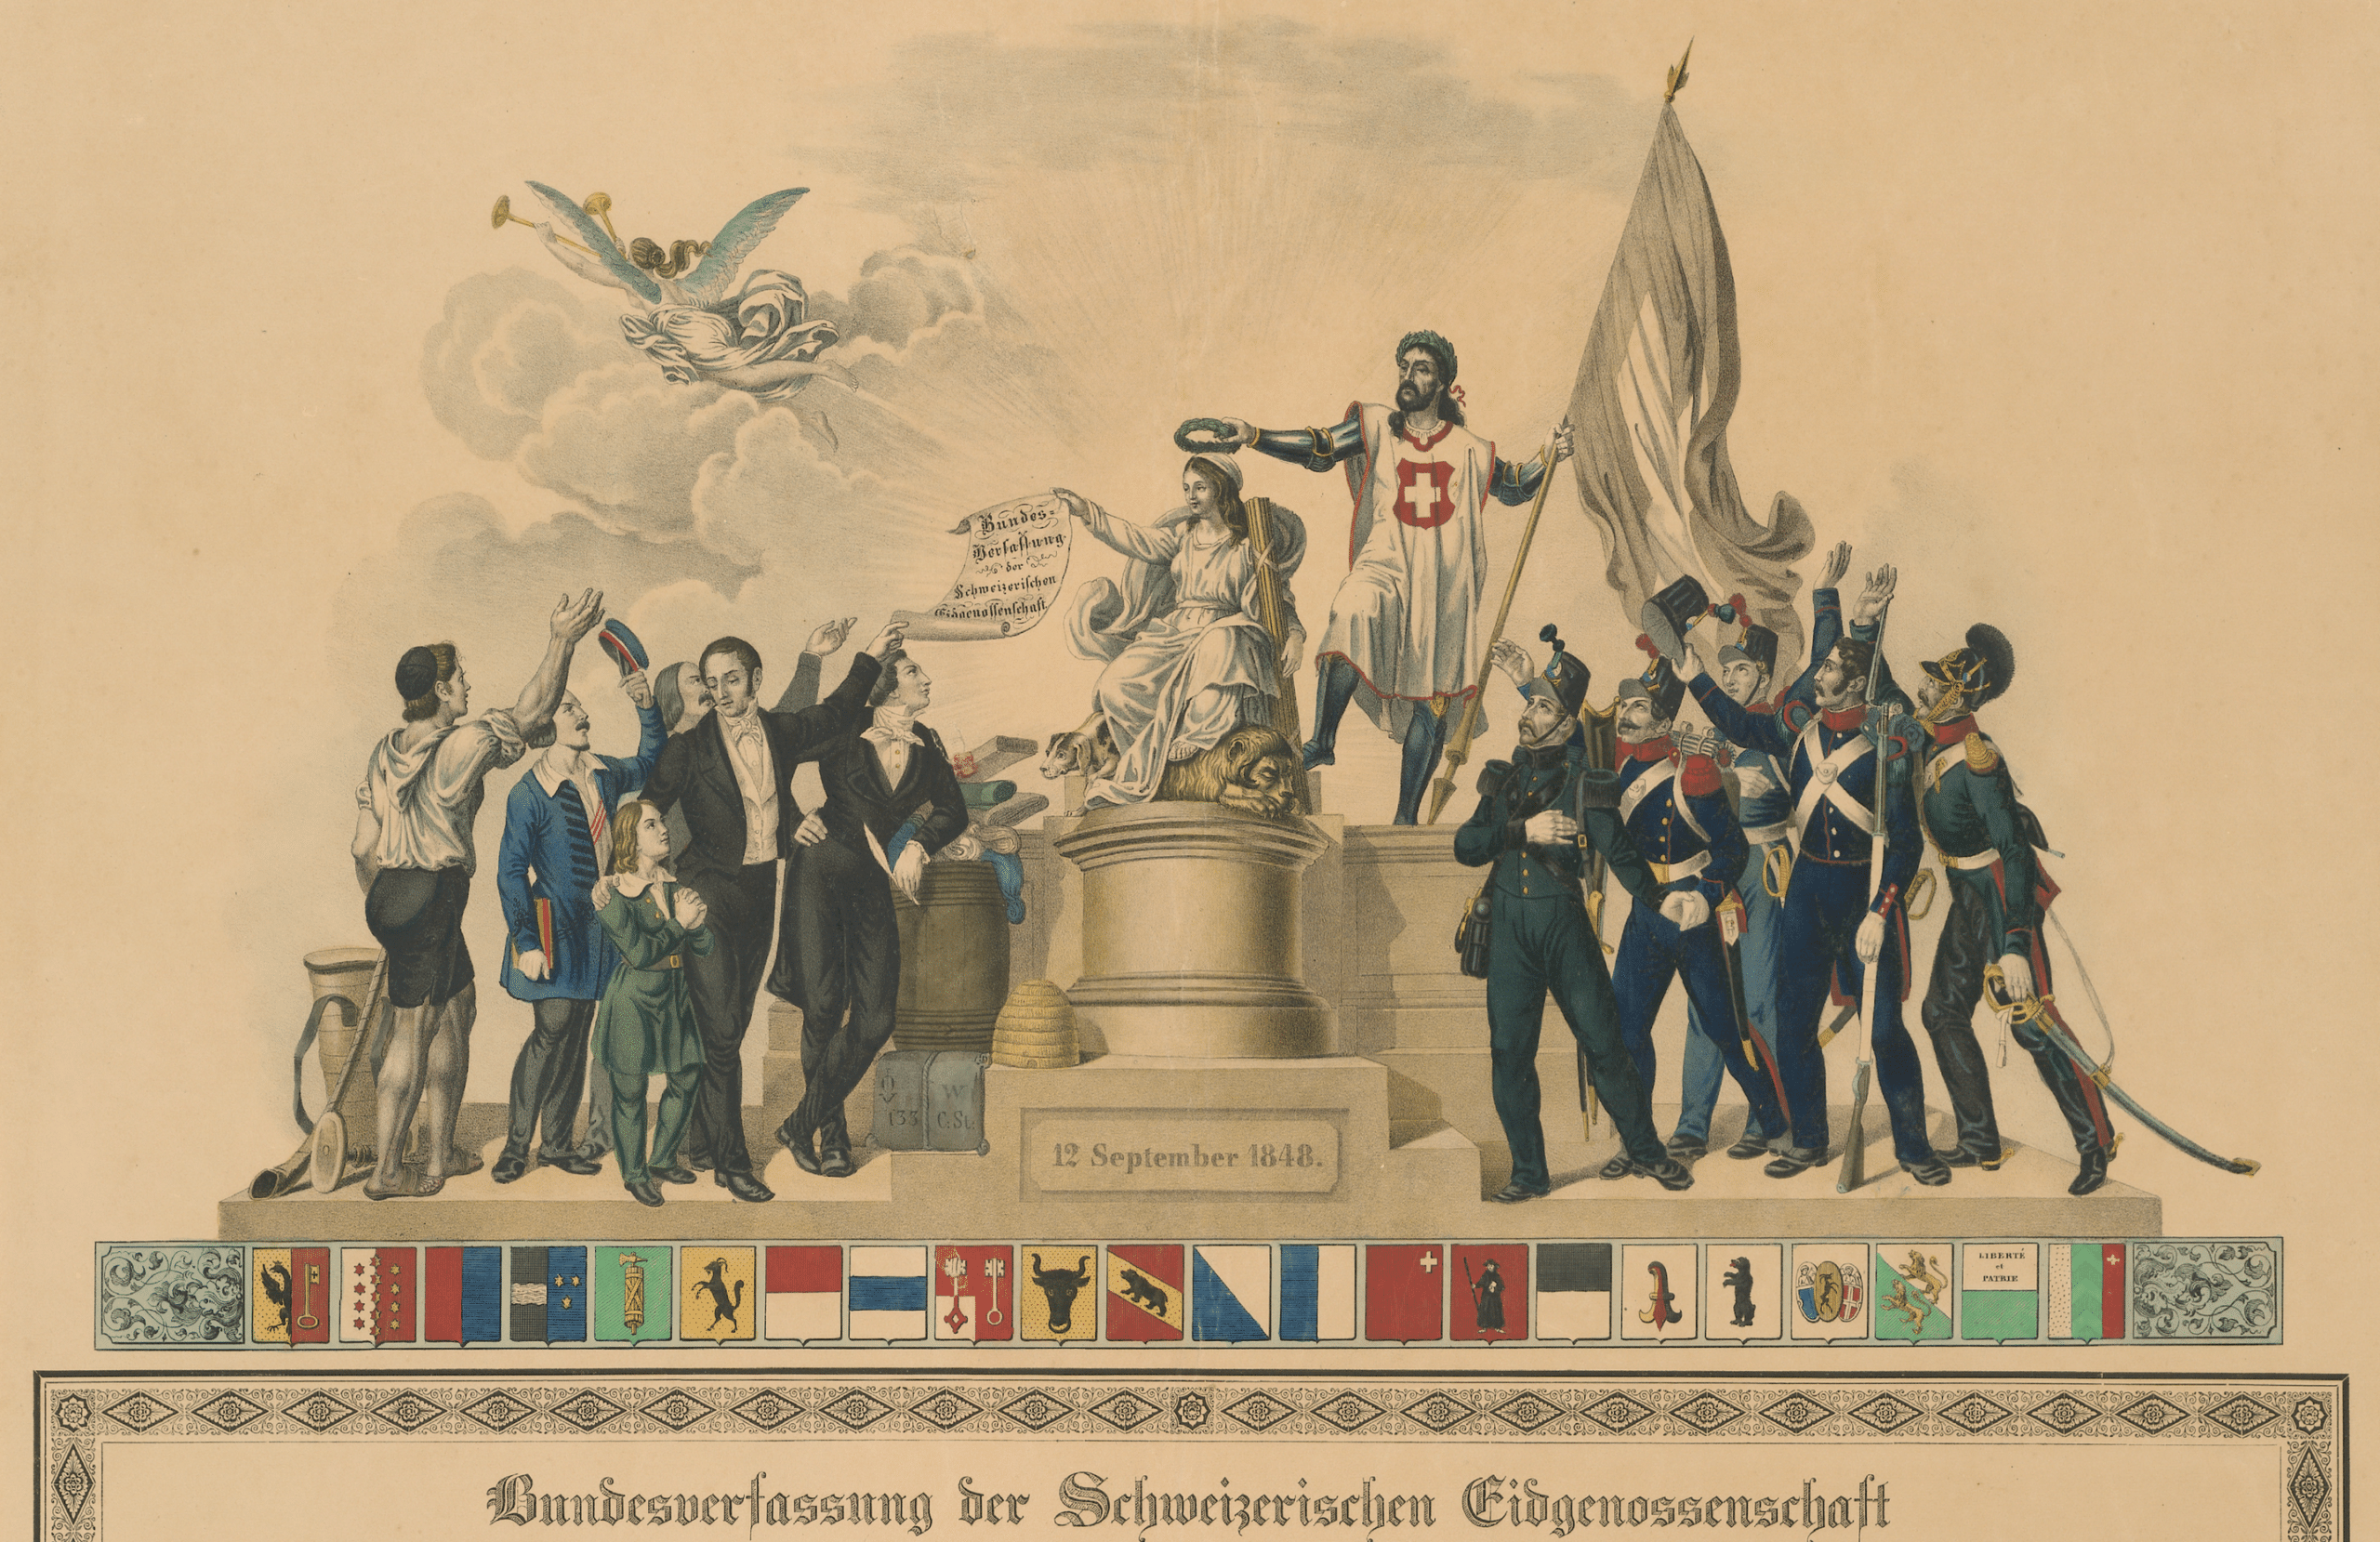 Иллюстрация в честь вступления в силу первой федеративной Конституции 12 сентября 1848 г. Библиотека Берна. Общественное достояние.